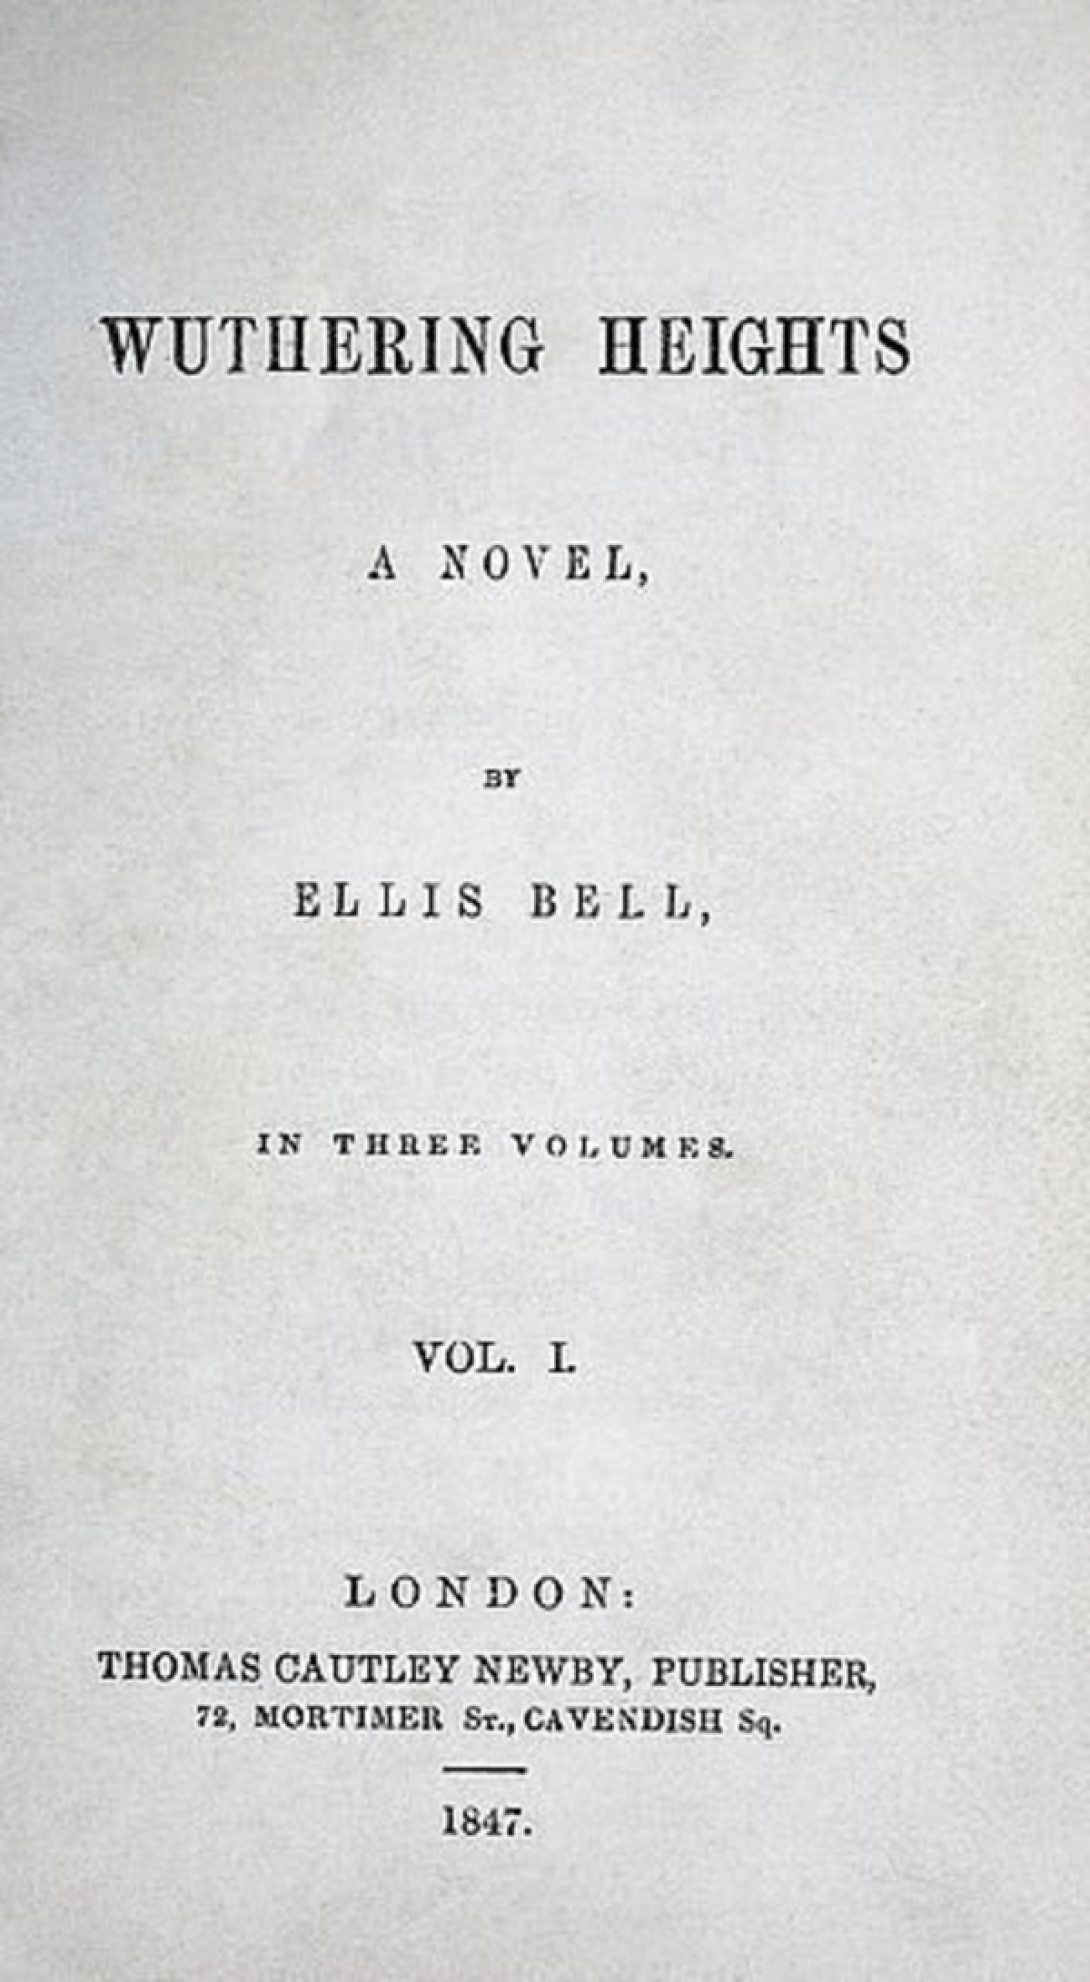 Portada de la edición original de “Cumbres Borrascosas” firmada por Emily Brontë con el seudónimo de Ellis Bell. 